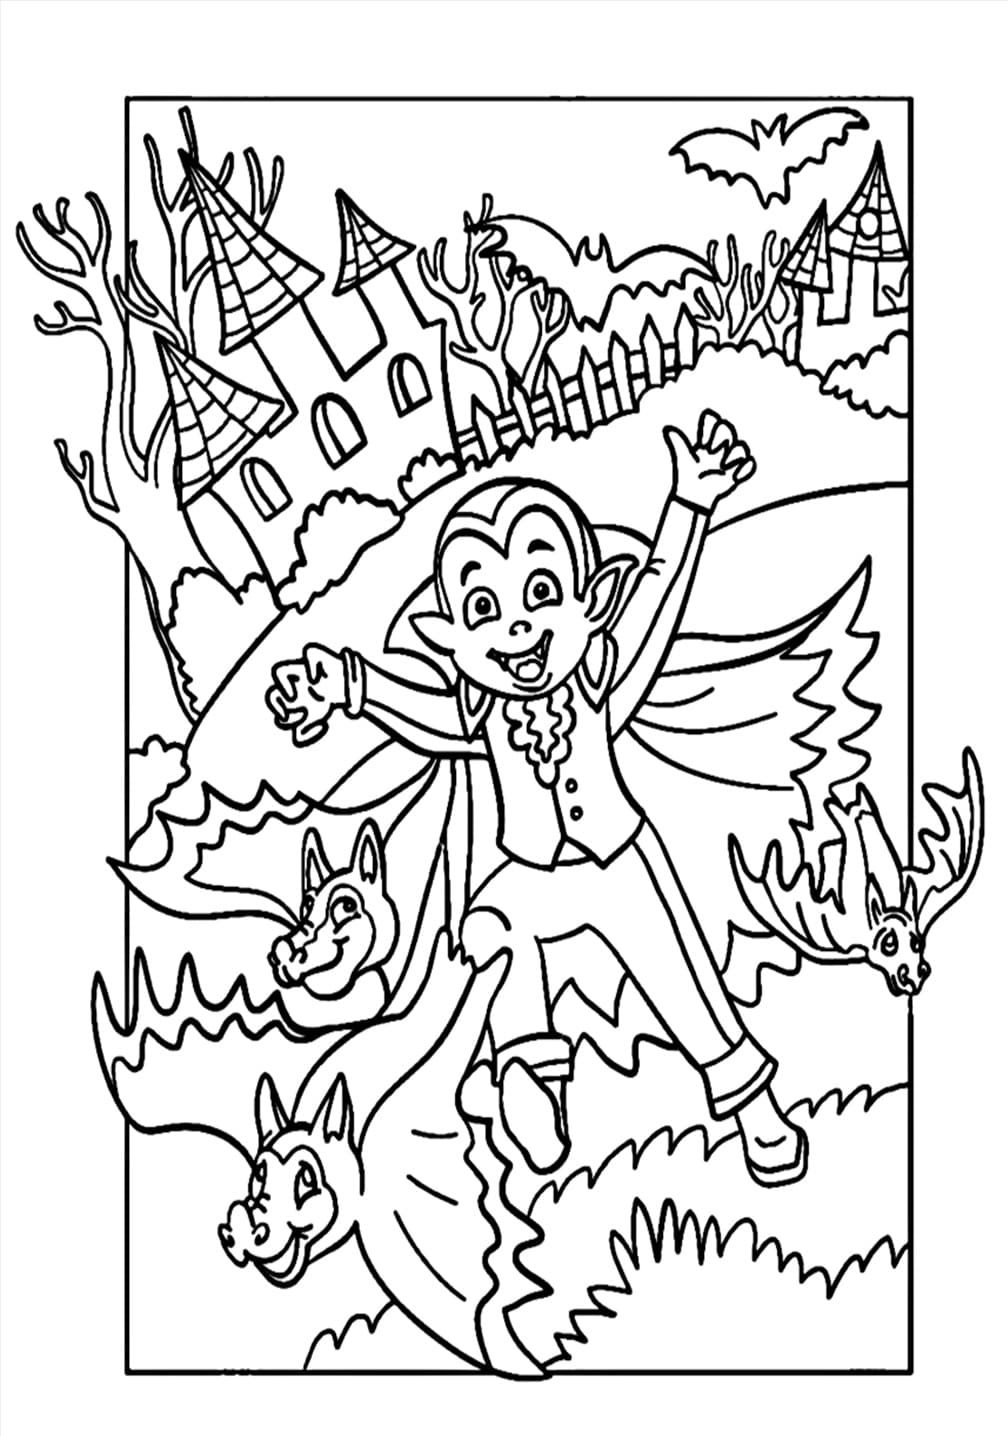 Vampire et Chauves-souris d’Halloween coloring page